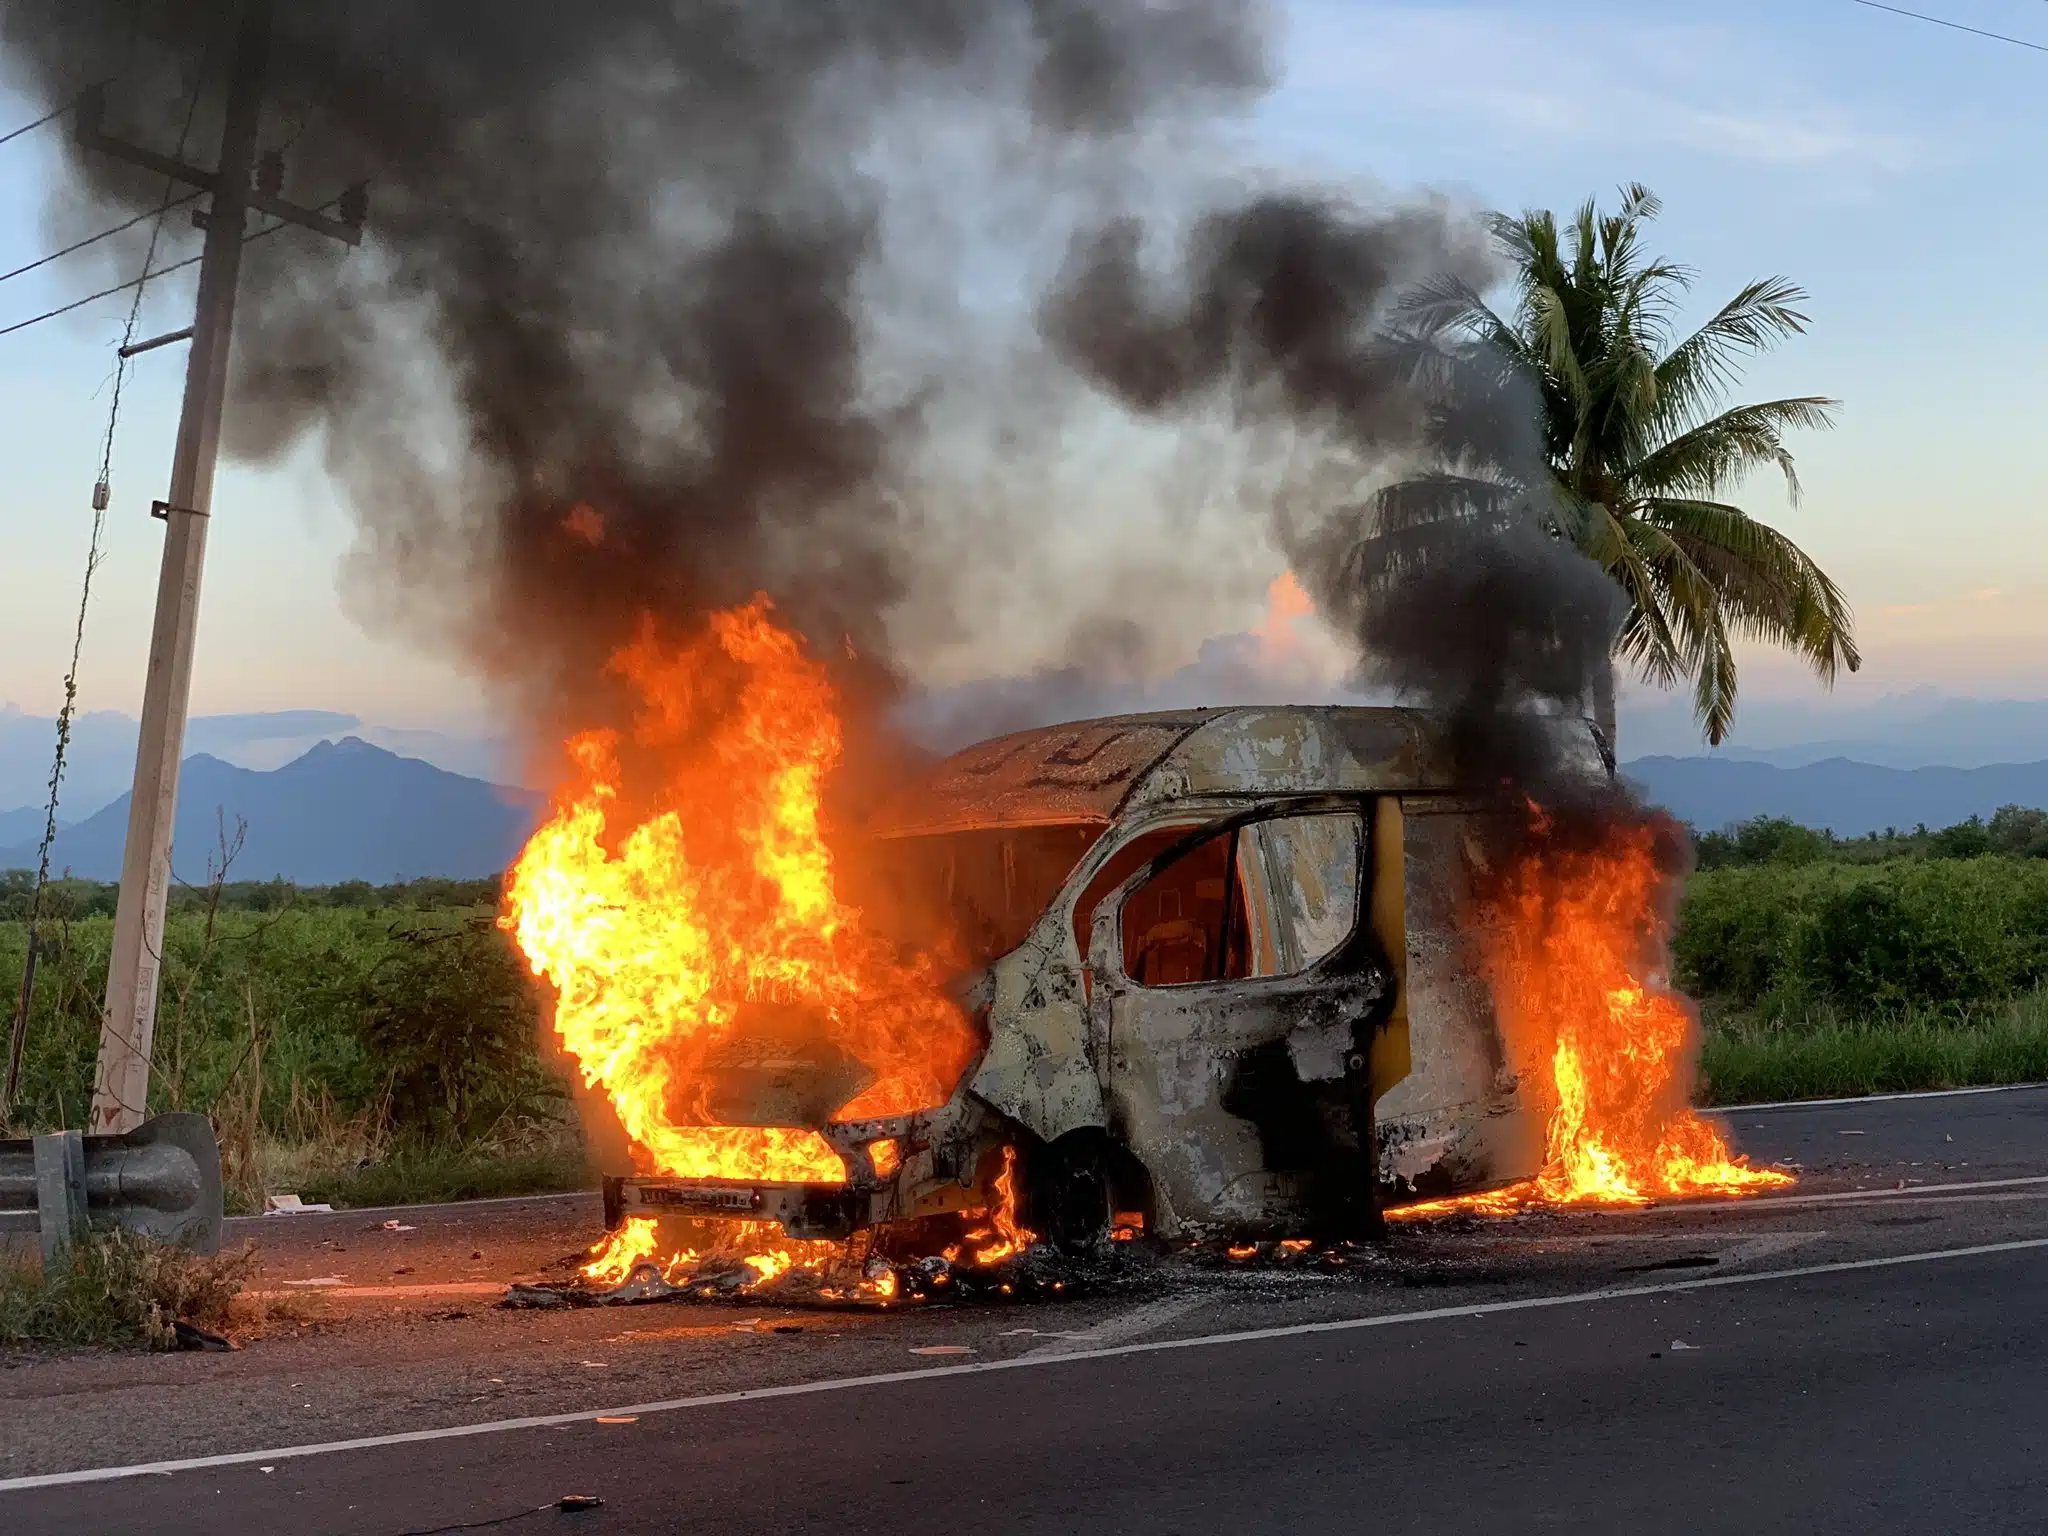 Bloqueos y autos en llamas en Michoacán; trasciende detención de ocho presuntos objetivos delincuenciales